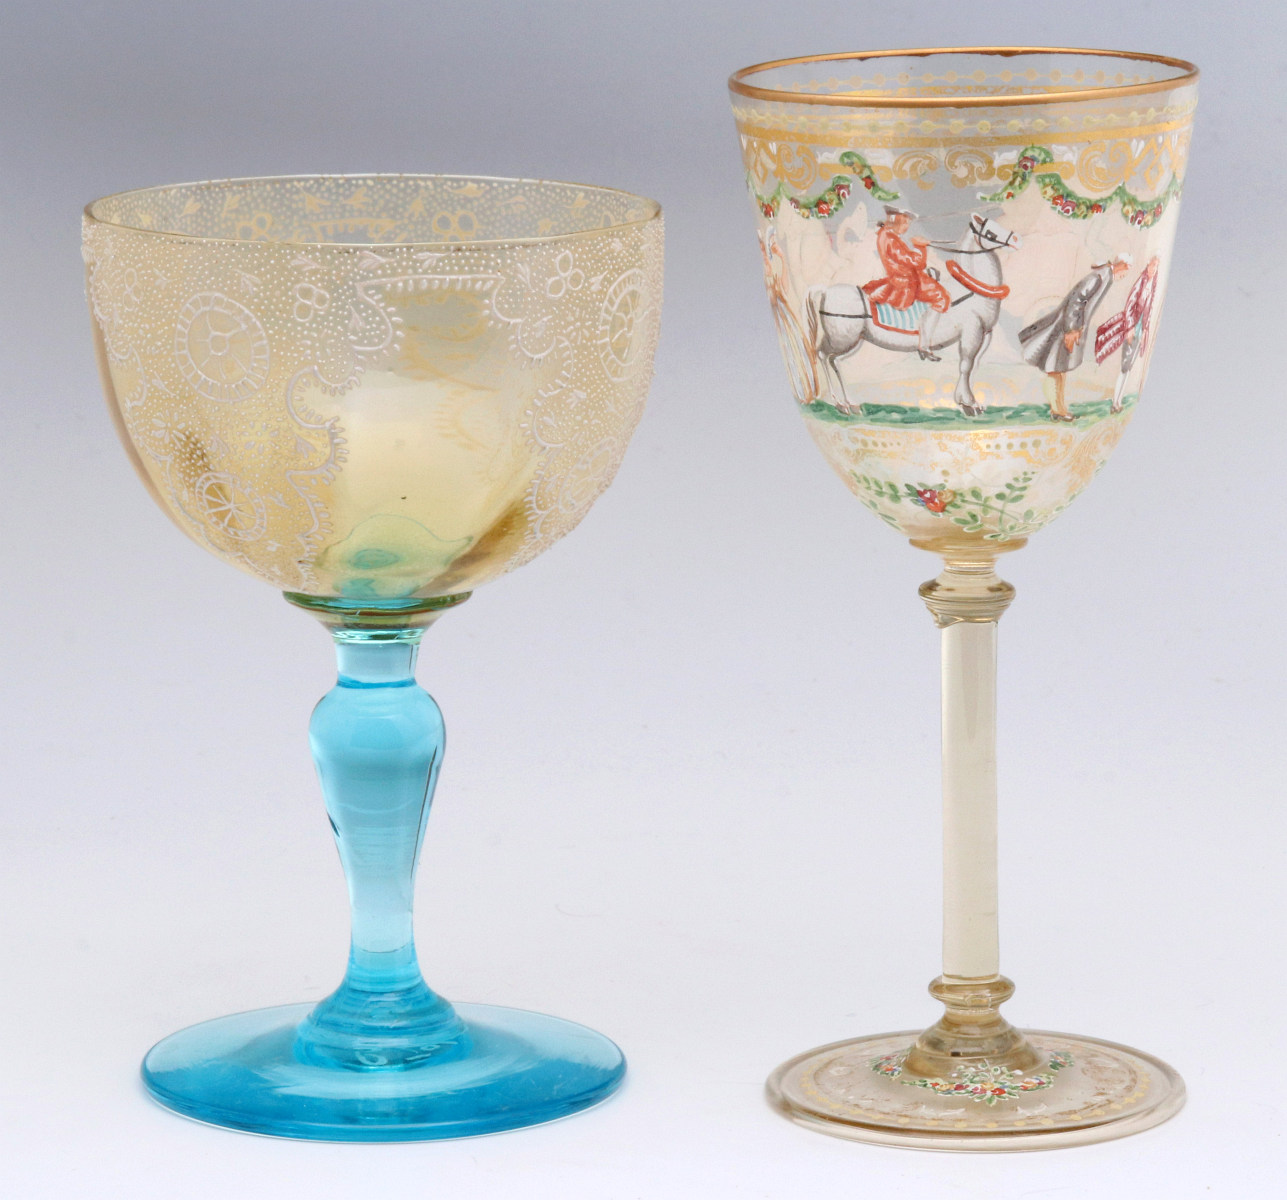 TWO INTERESTING ENAMELED ART GLASS WINE GOBLETS